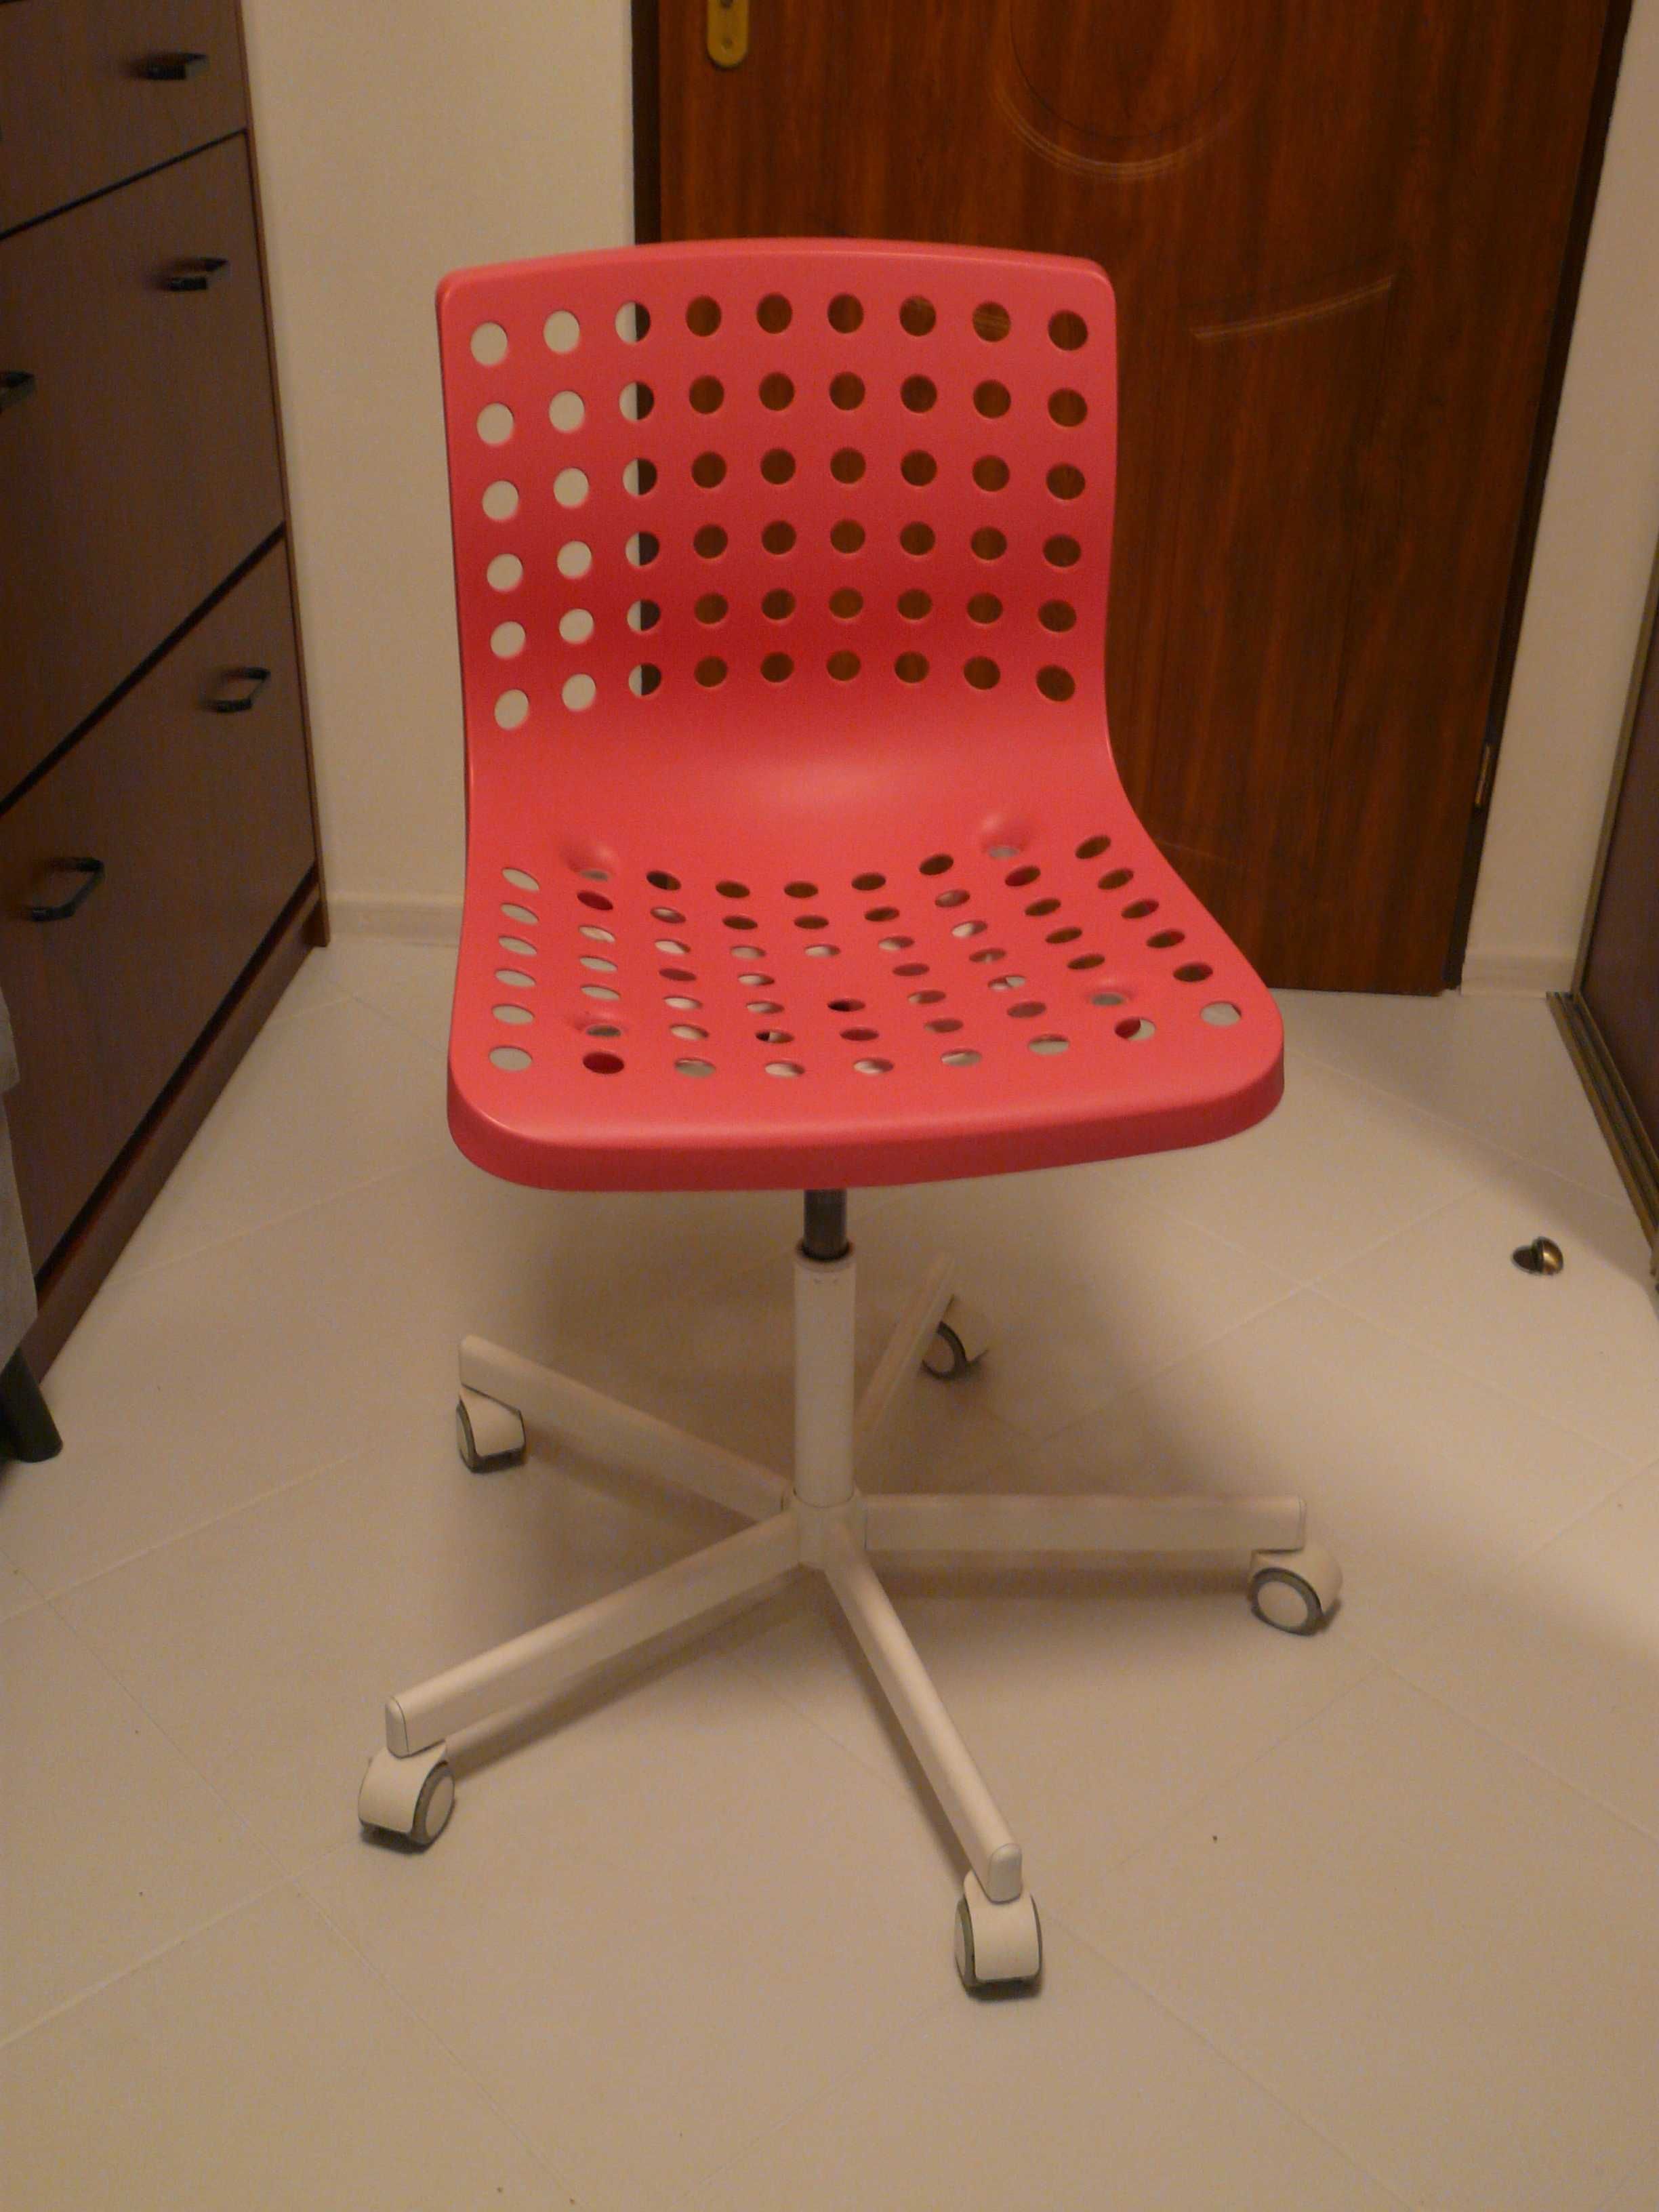 Krzesło biurkowe Ikea